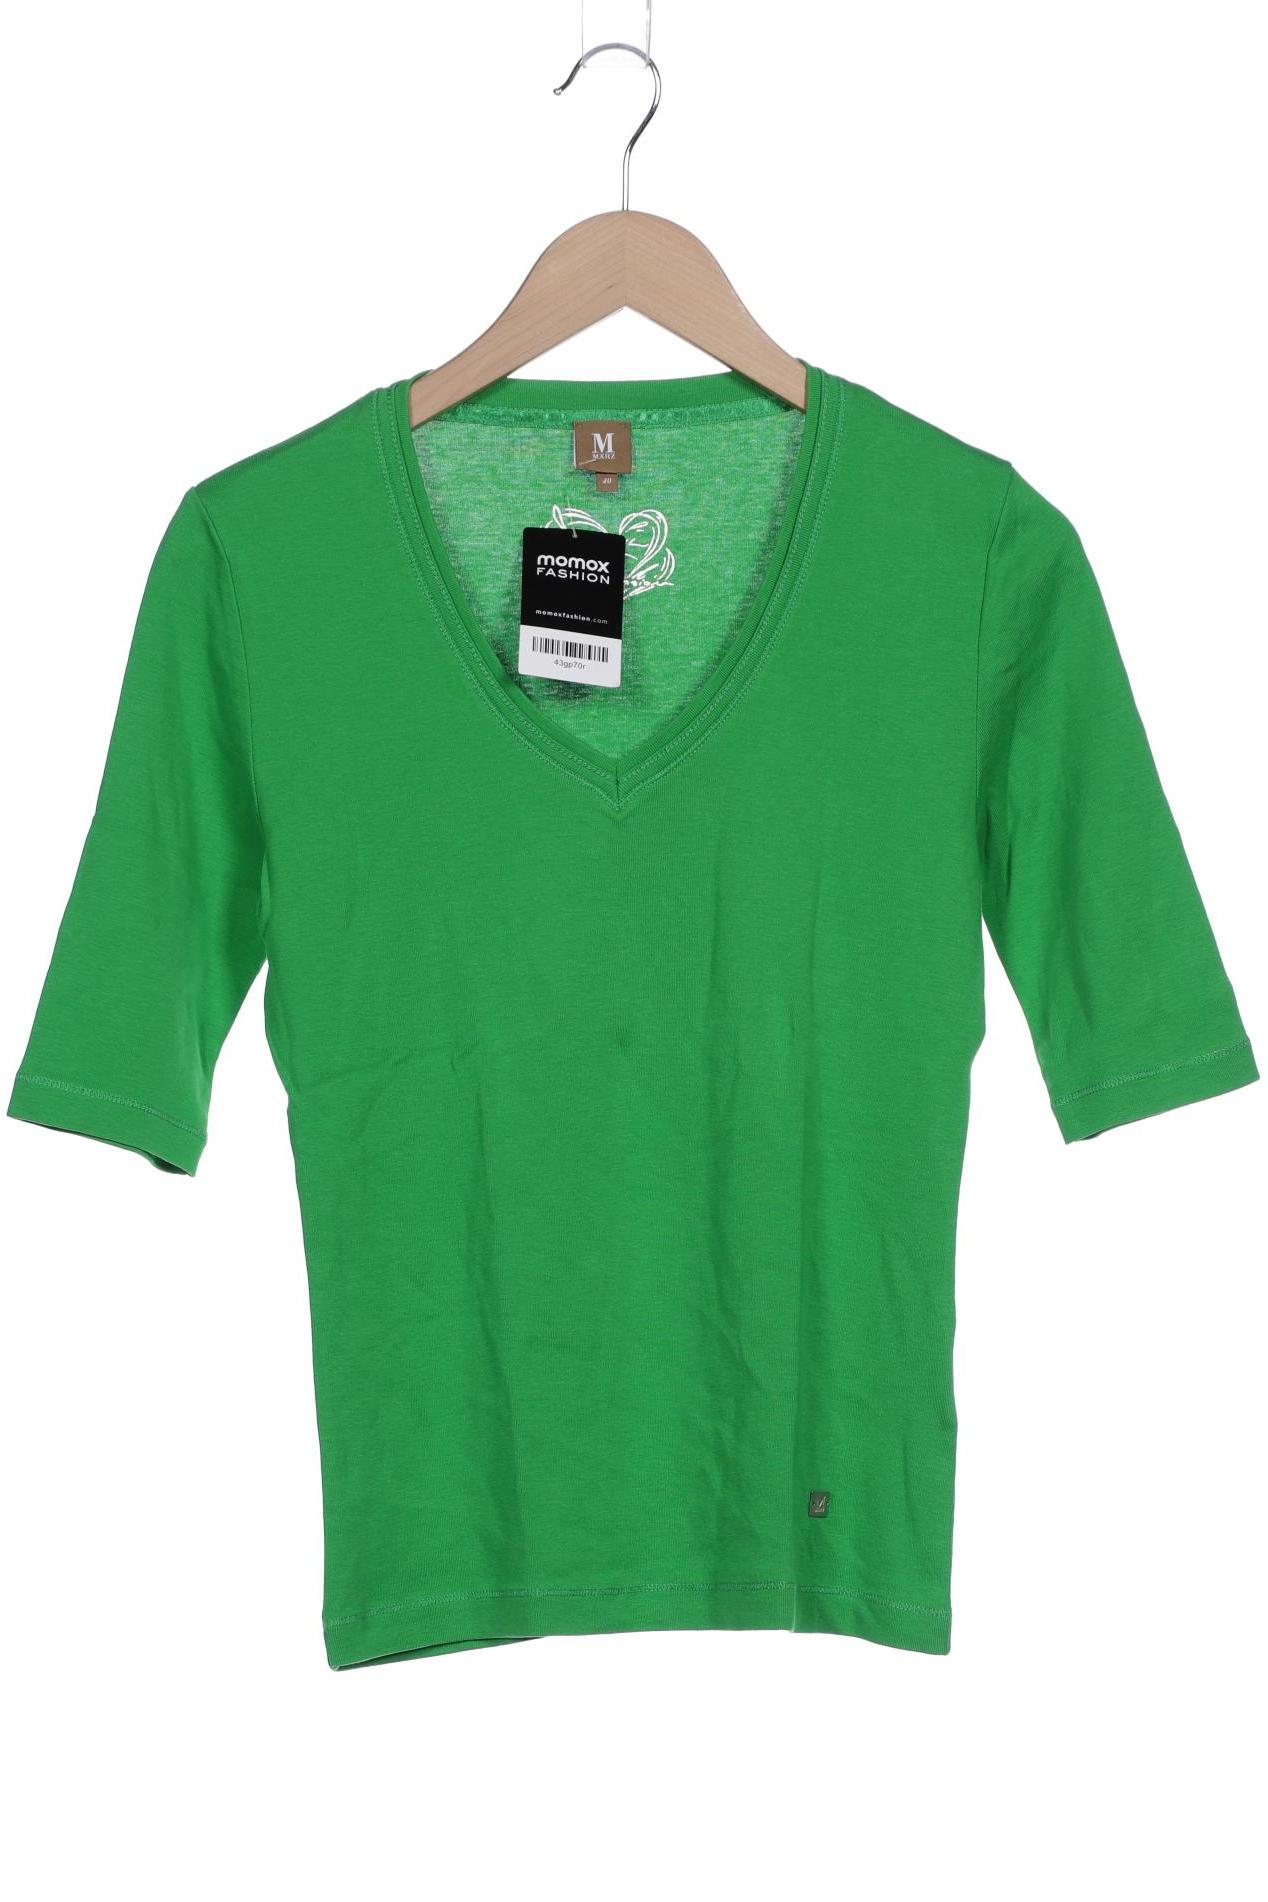 MAERZ Damen T-Shirt, grün von MAERZ